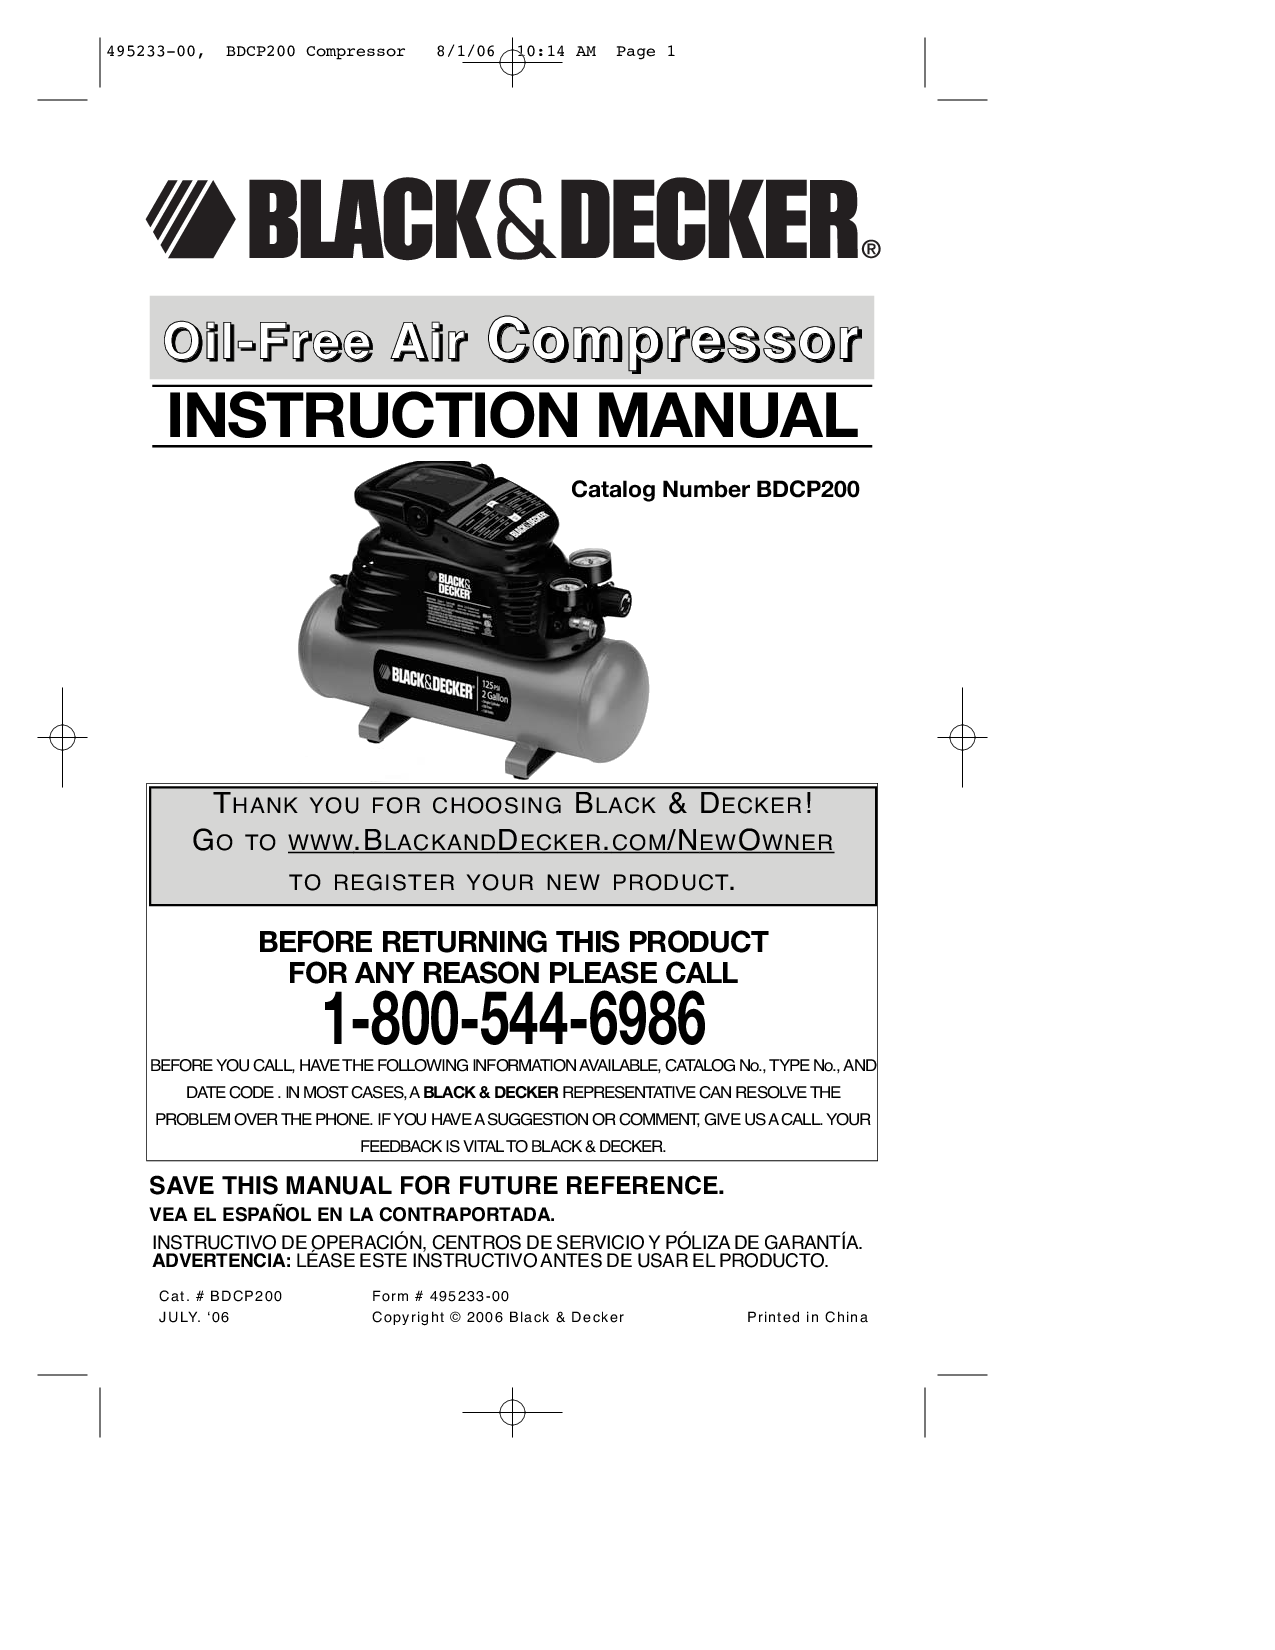 Black & Decker 495233-00, BDCP200 User Manual